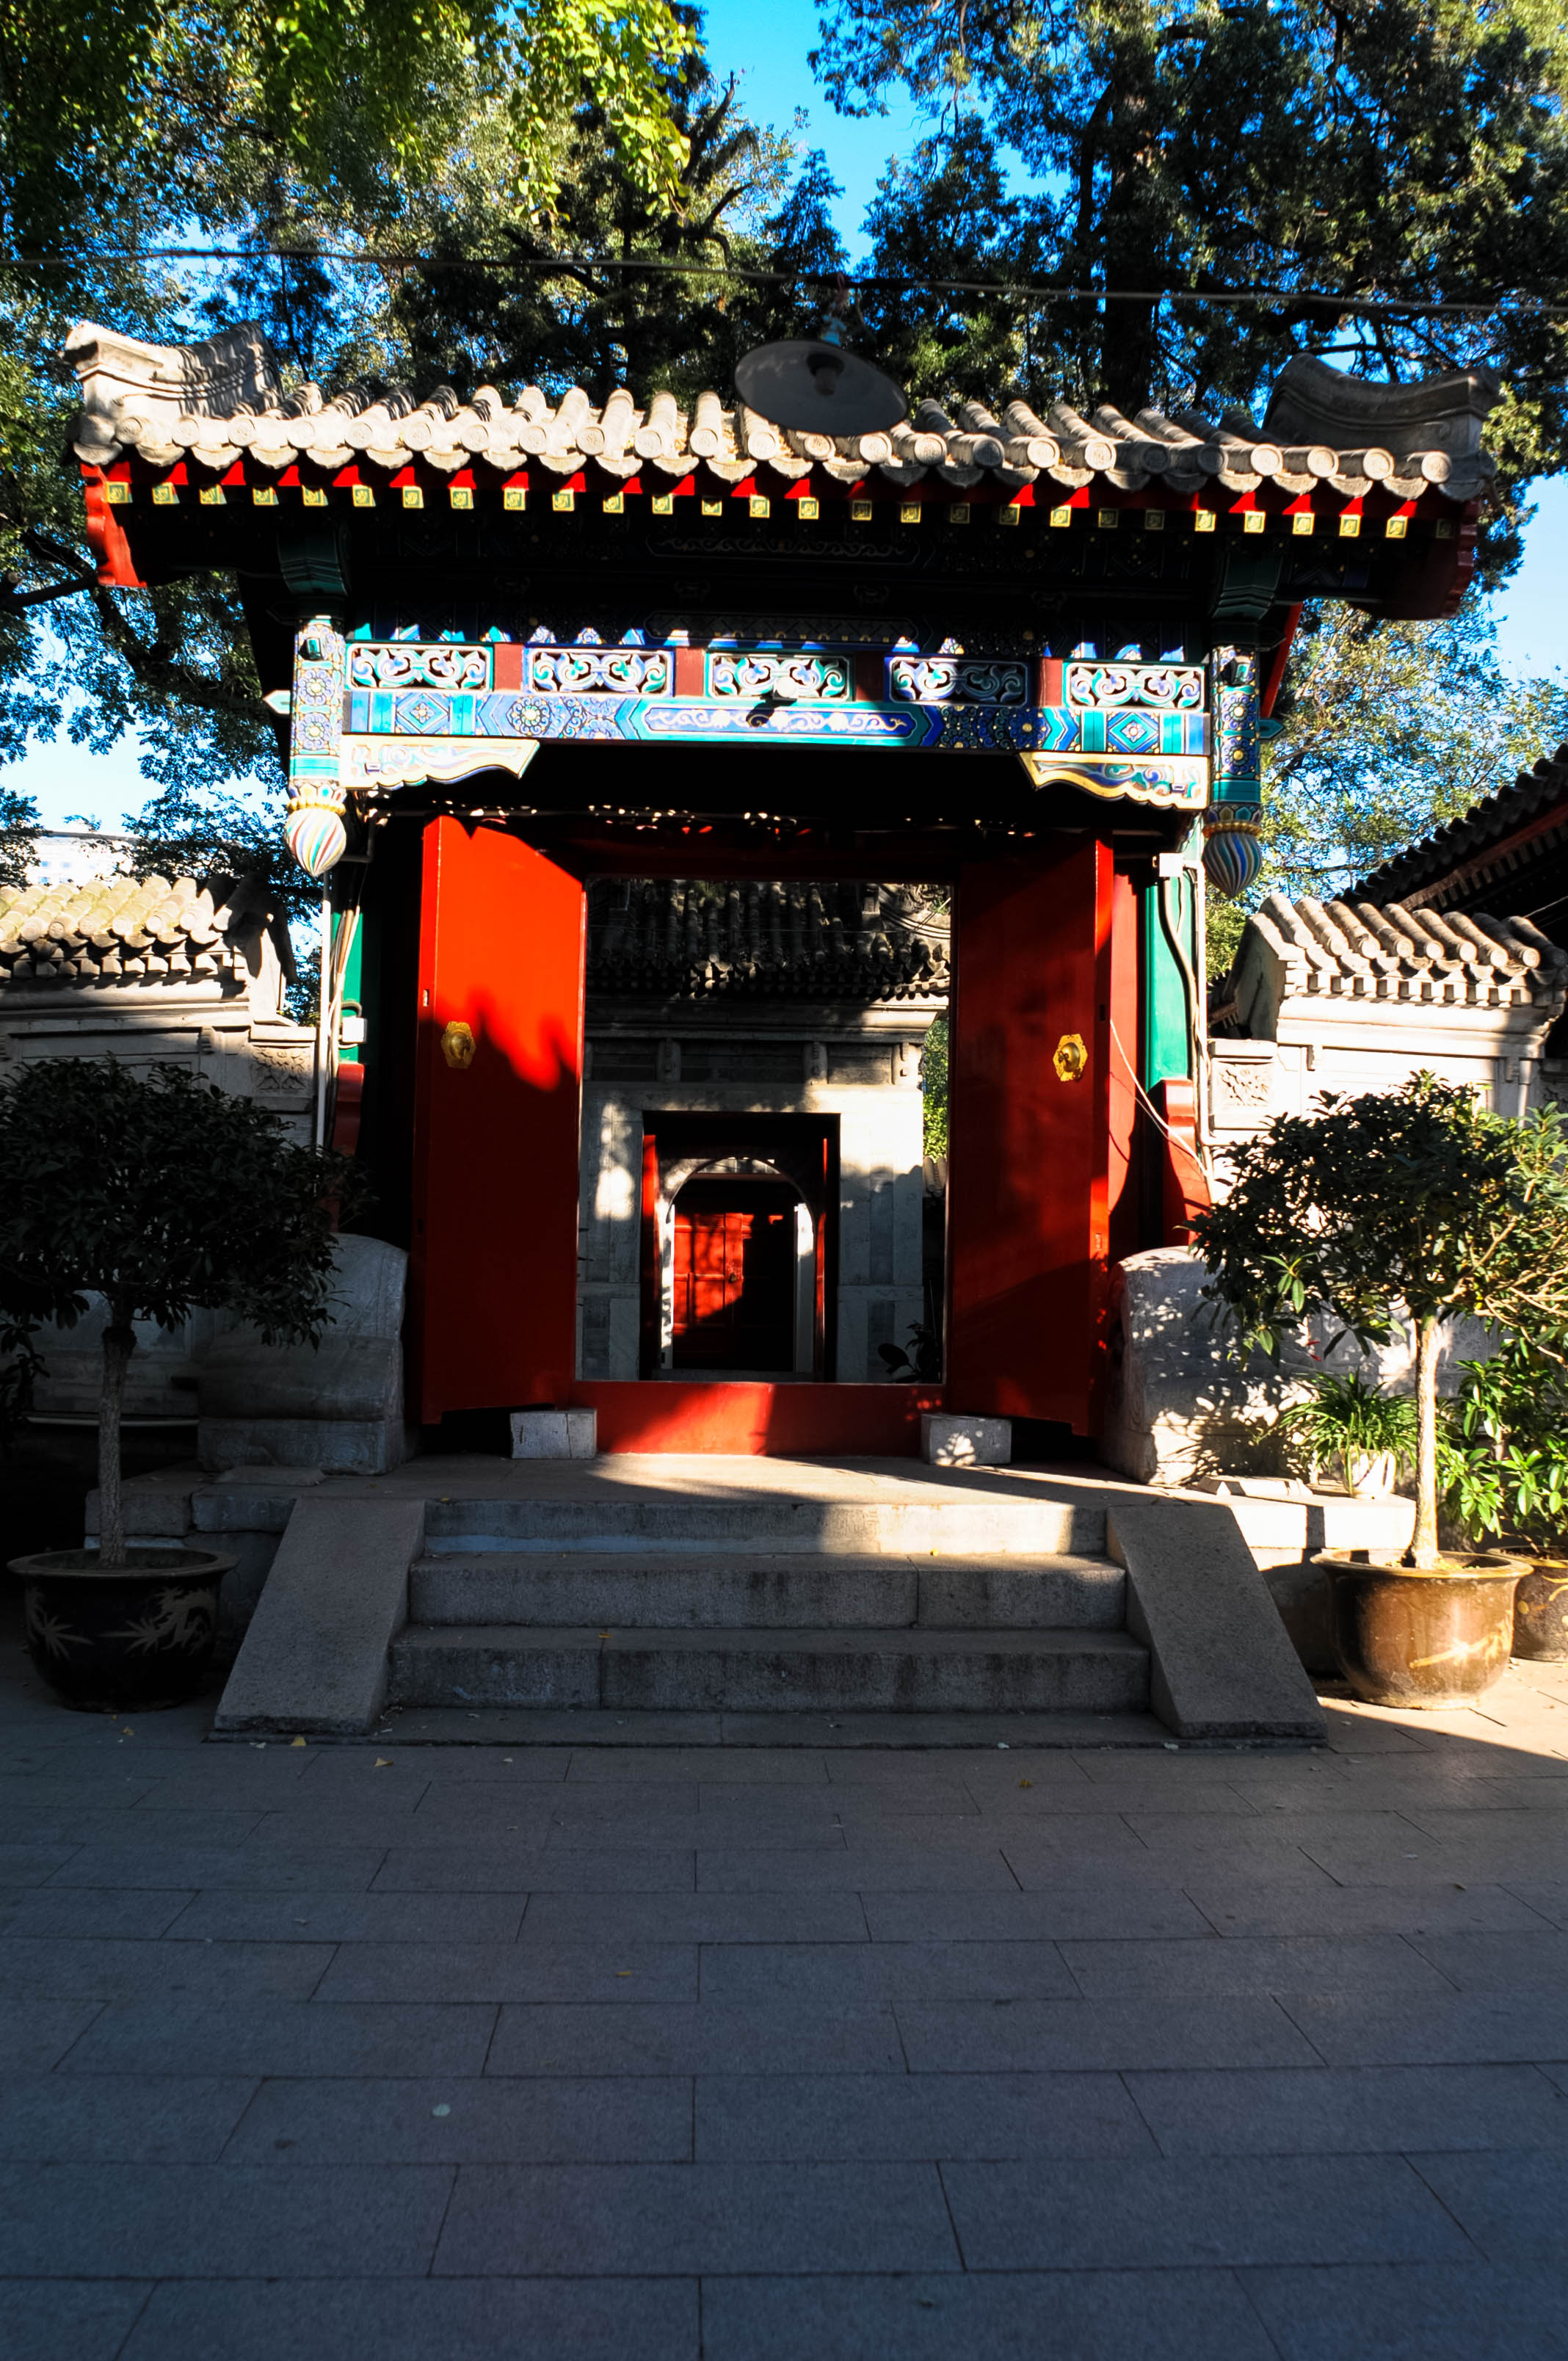 庭院的正西为大殿，九级台阶烘托起十六间大殿，大殿中为窑洞式殿堂，是具有中国特色的伊斯兰教建筑。